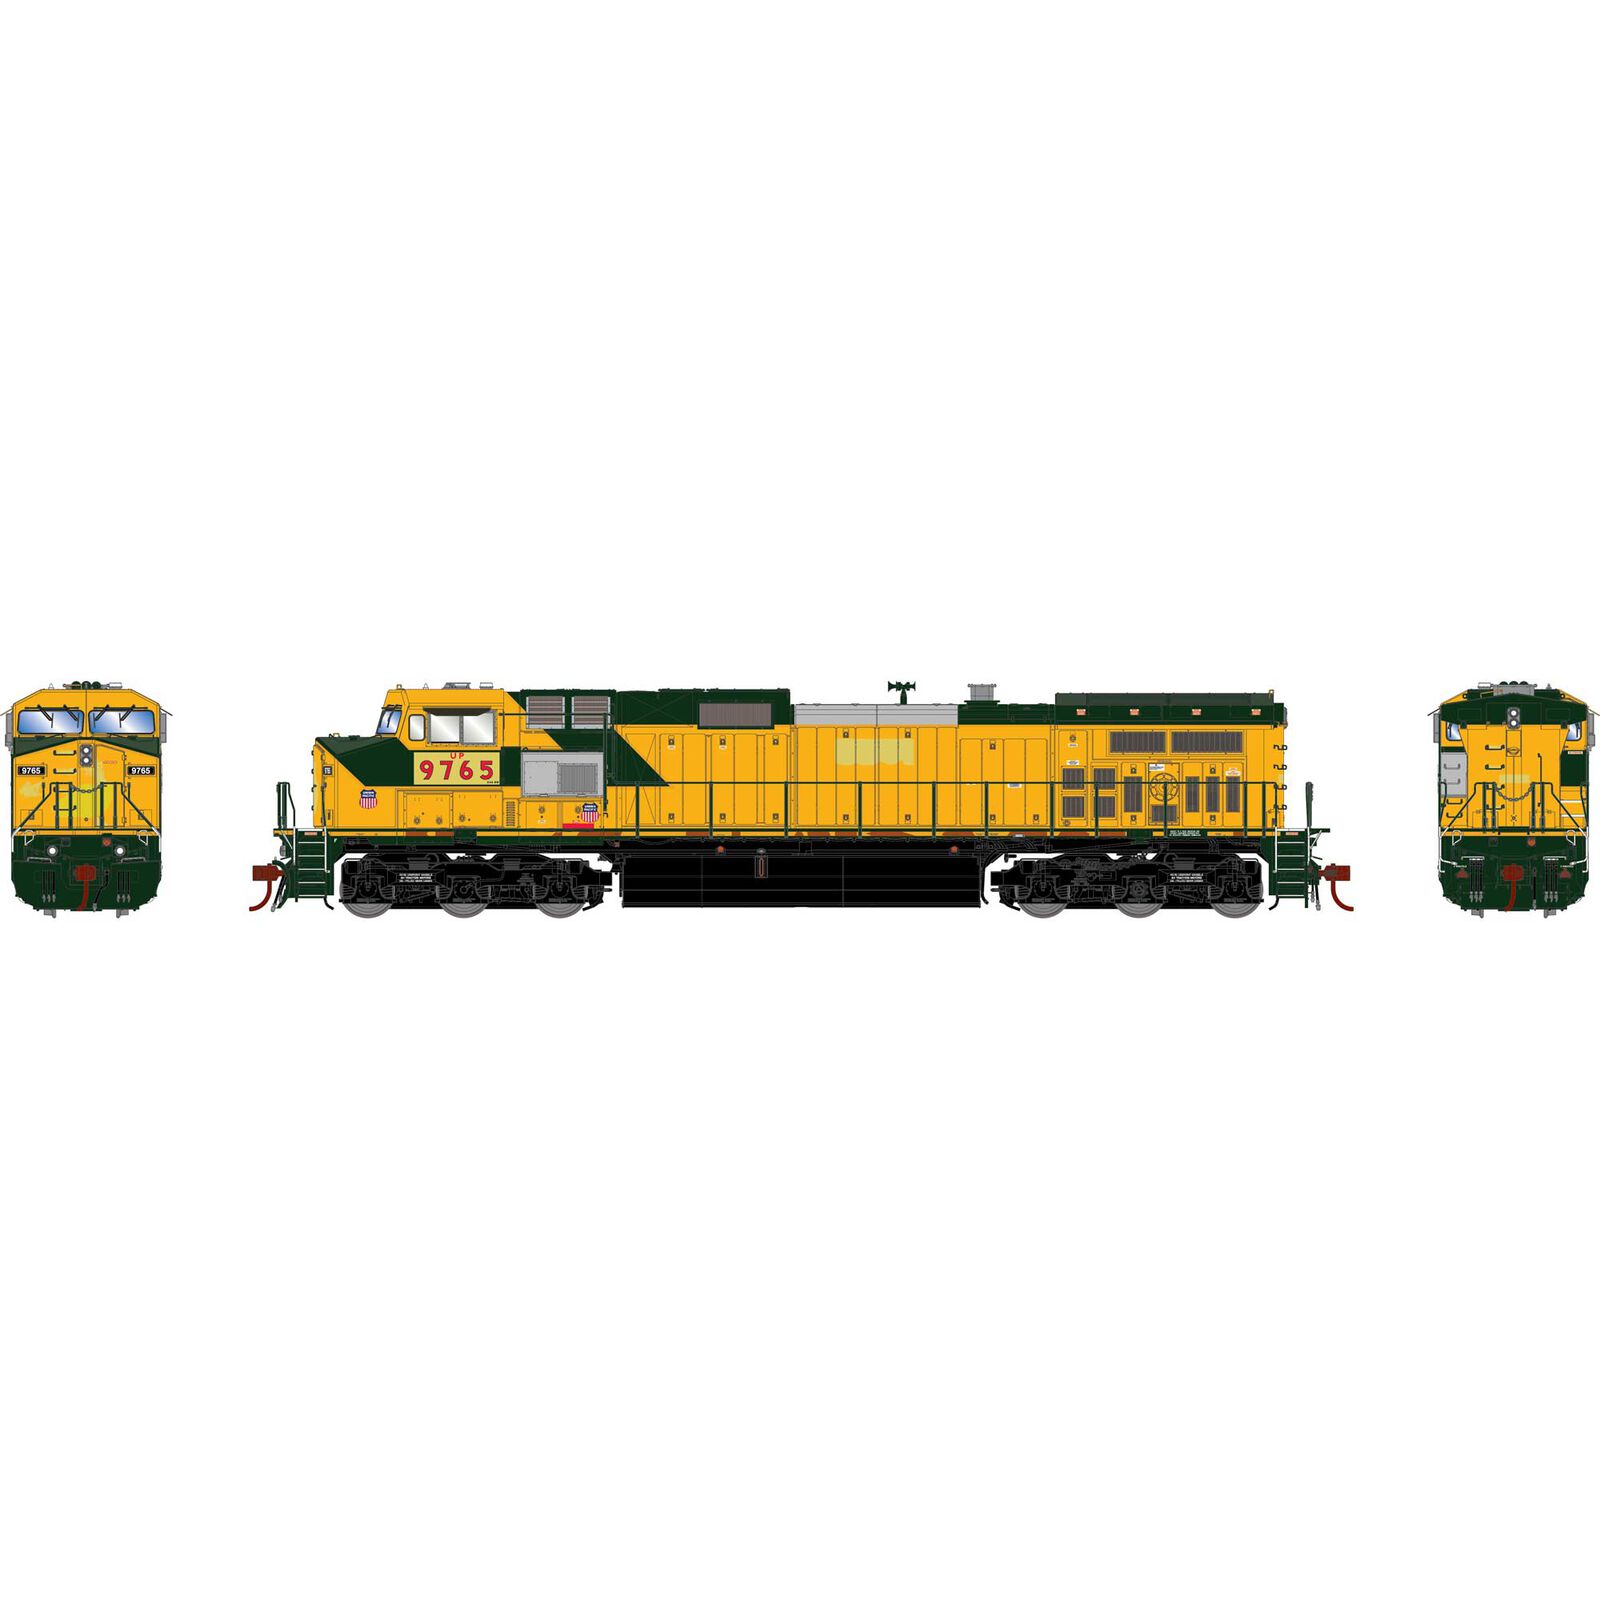 HO Dash 9-44CW Locomotive, UP #9675